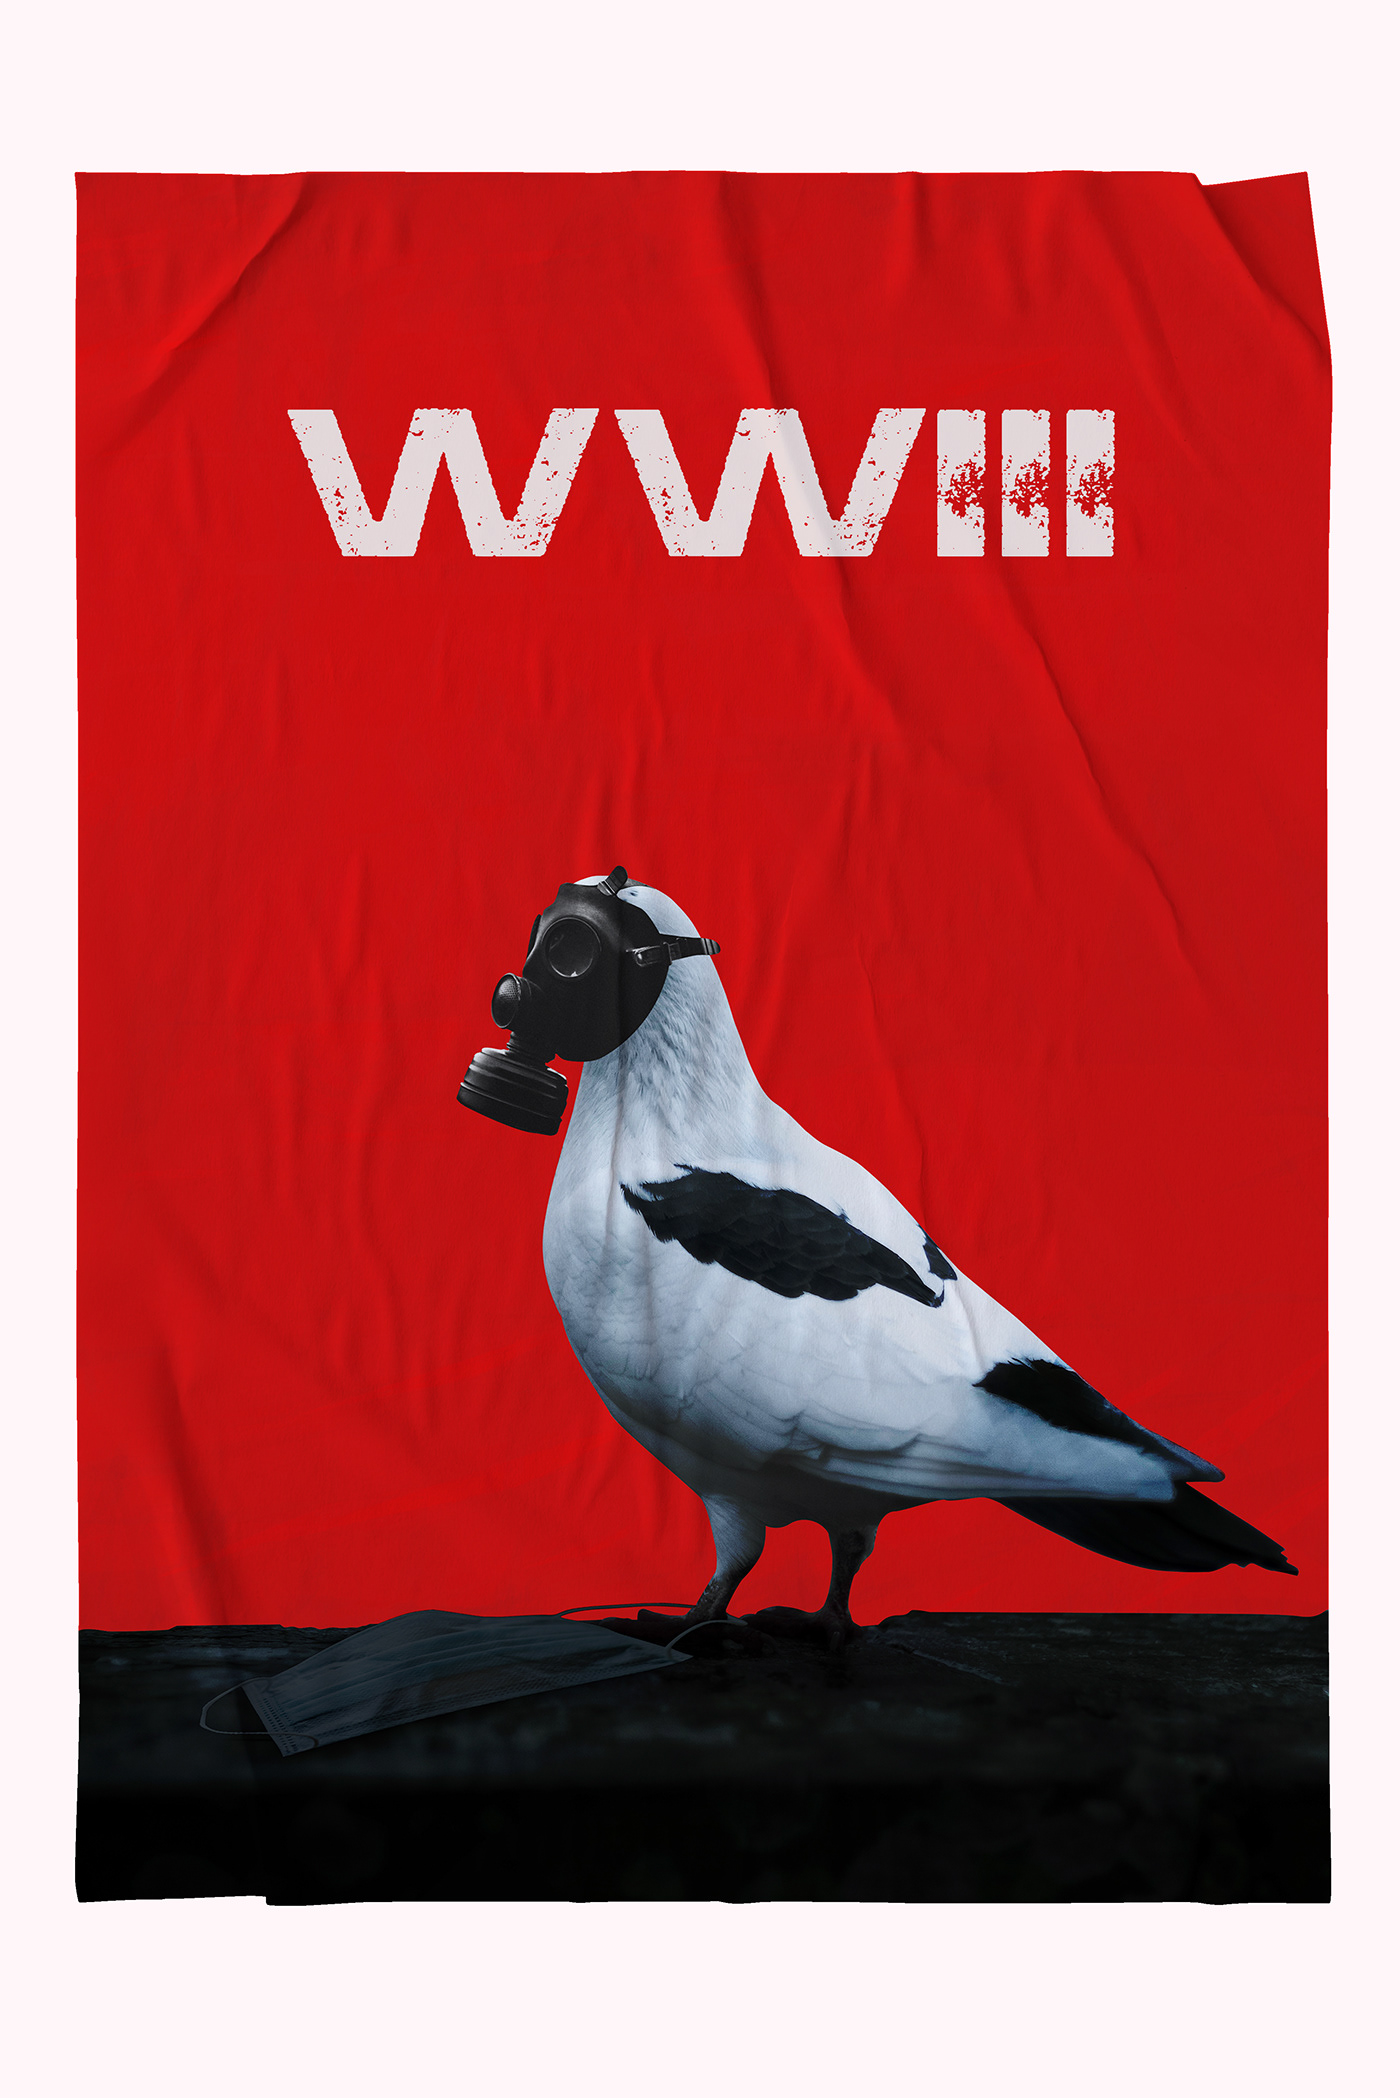 Abstract Art abstract poster artwork COVid Digital Art  poster Russia ukraine War world war